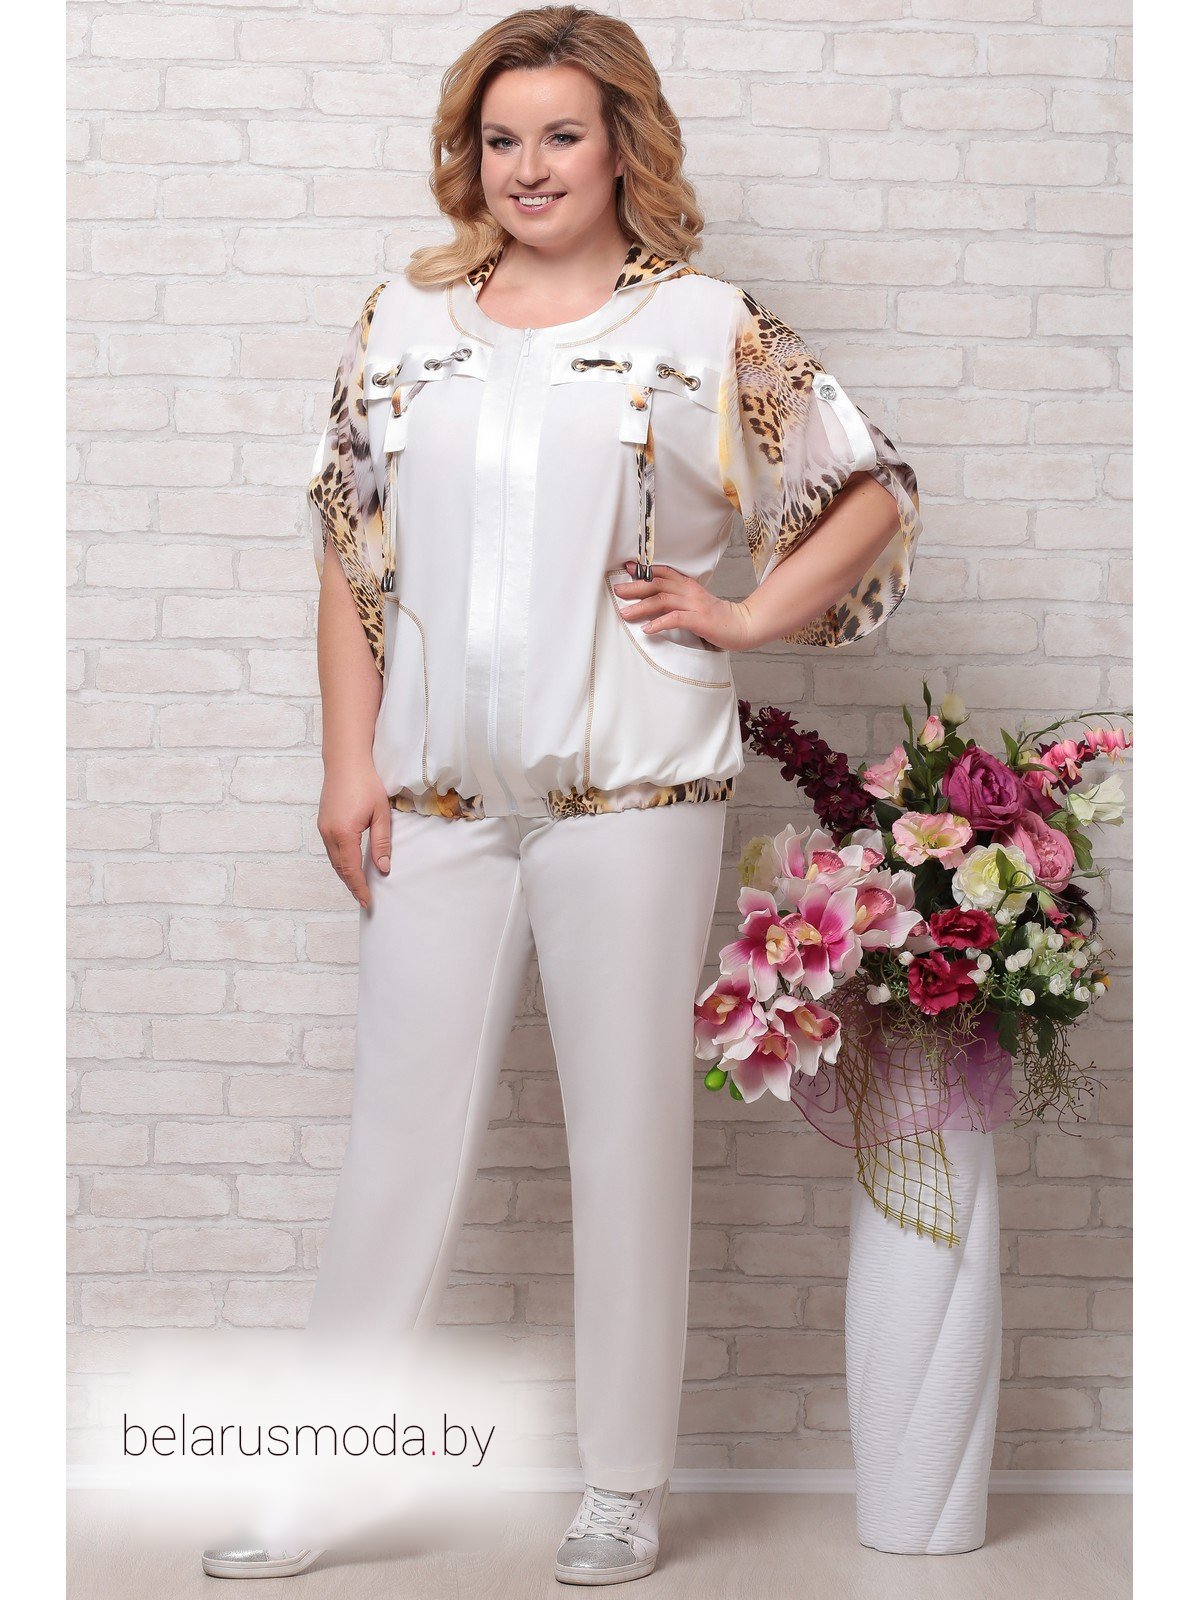 Костюмы женские брючные стильные большого размера купить. Комплект Aira Style. Комплект брючный Aira Style. Белорусские брючные костюмы Aira Style 650. Костюм Aira Style модель 764.